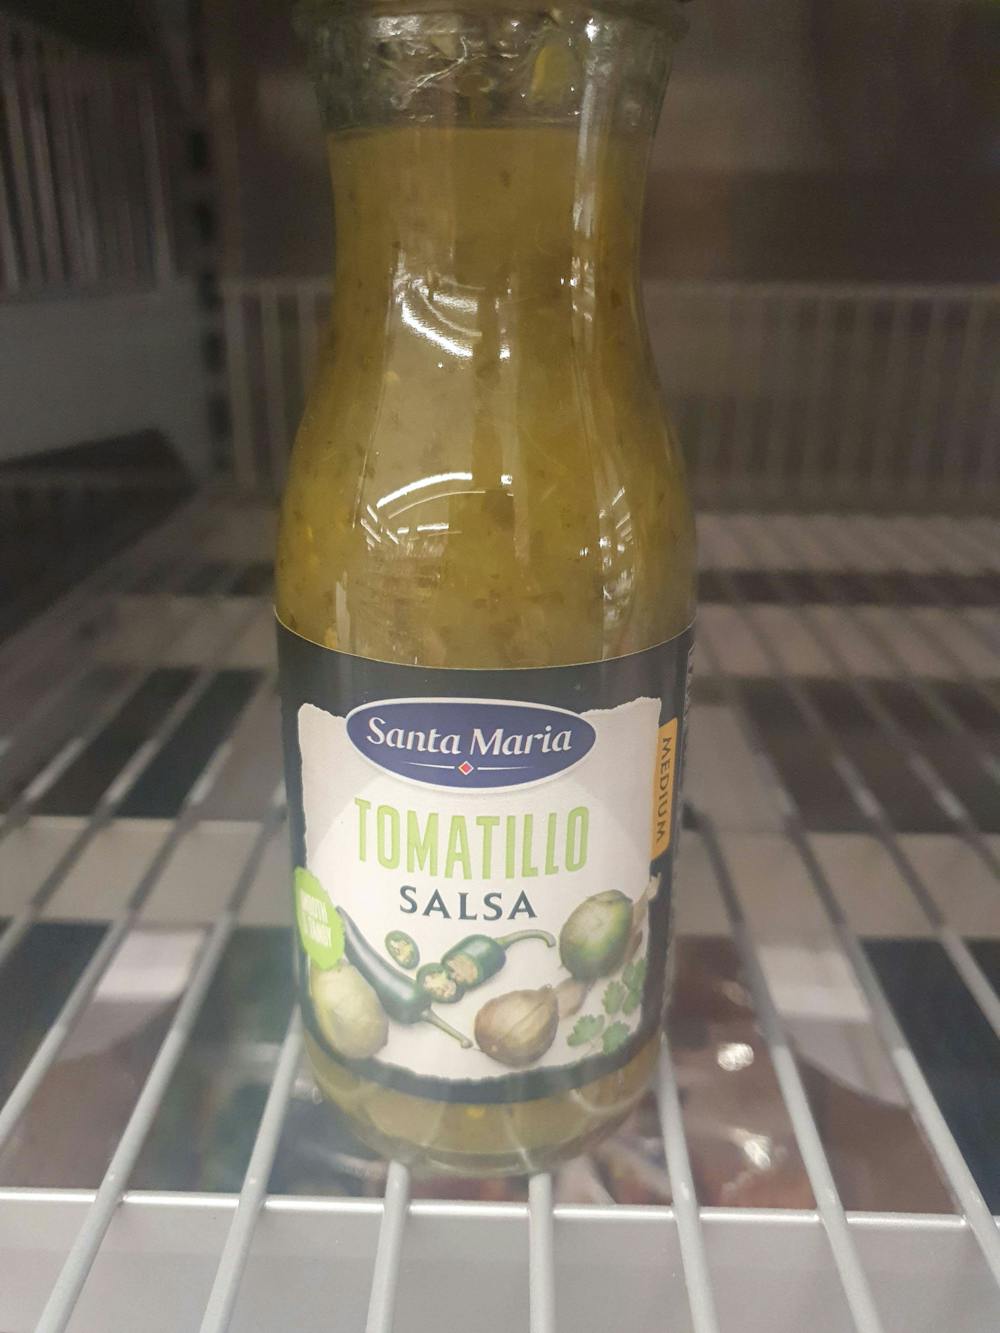 Tomatillo salsa, Santa Maria